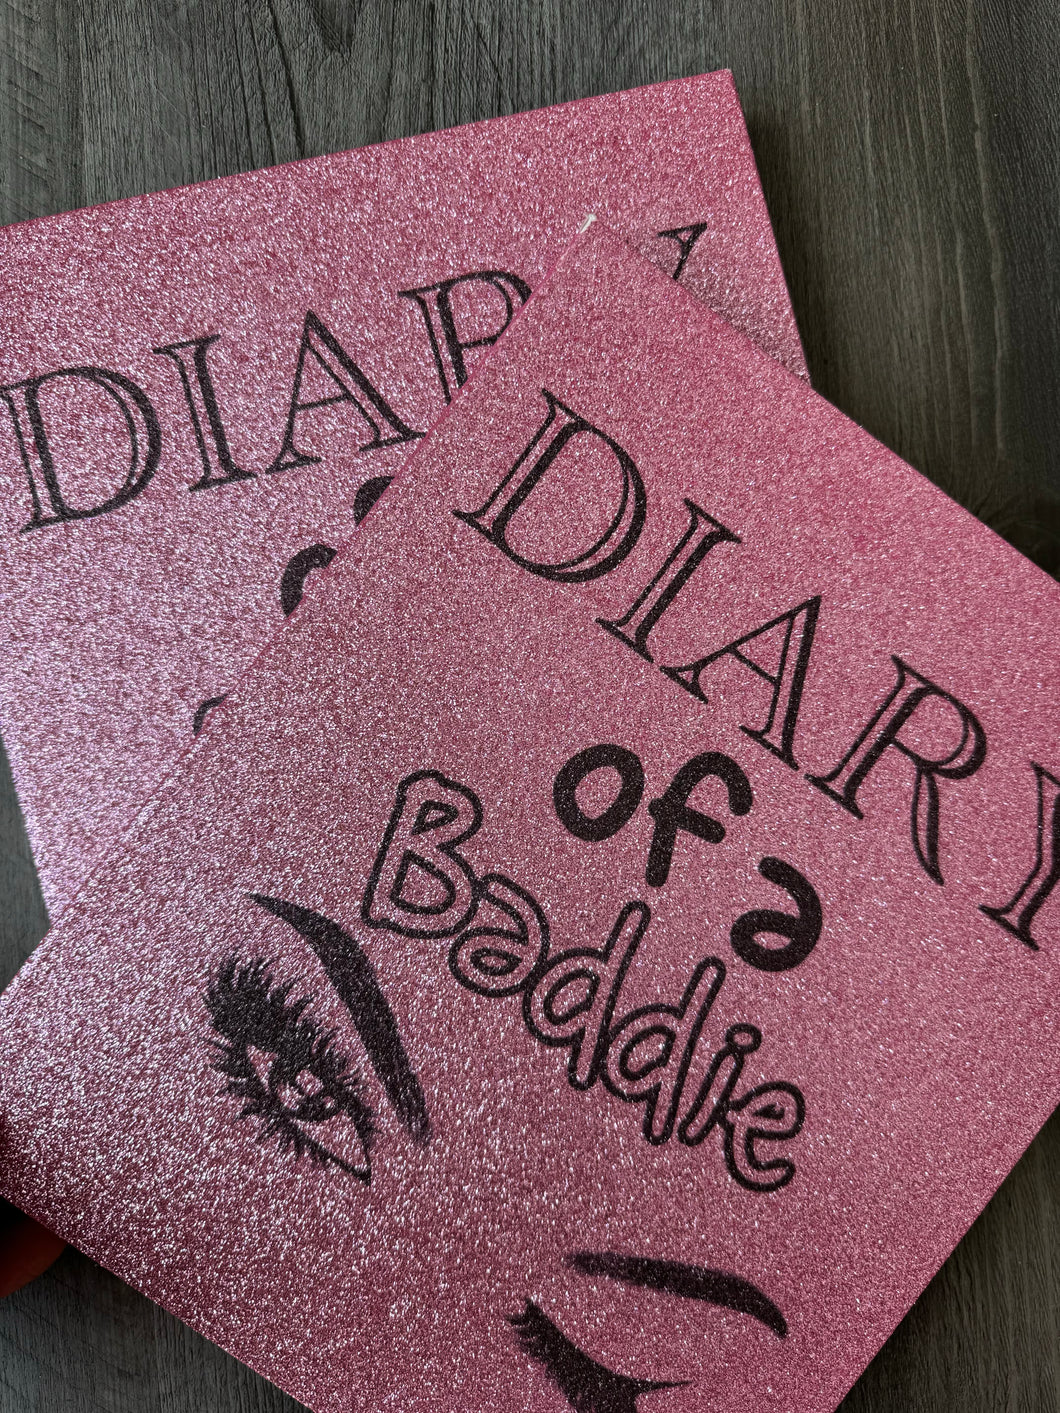 Diary of a Baddie Lashbook